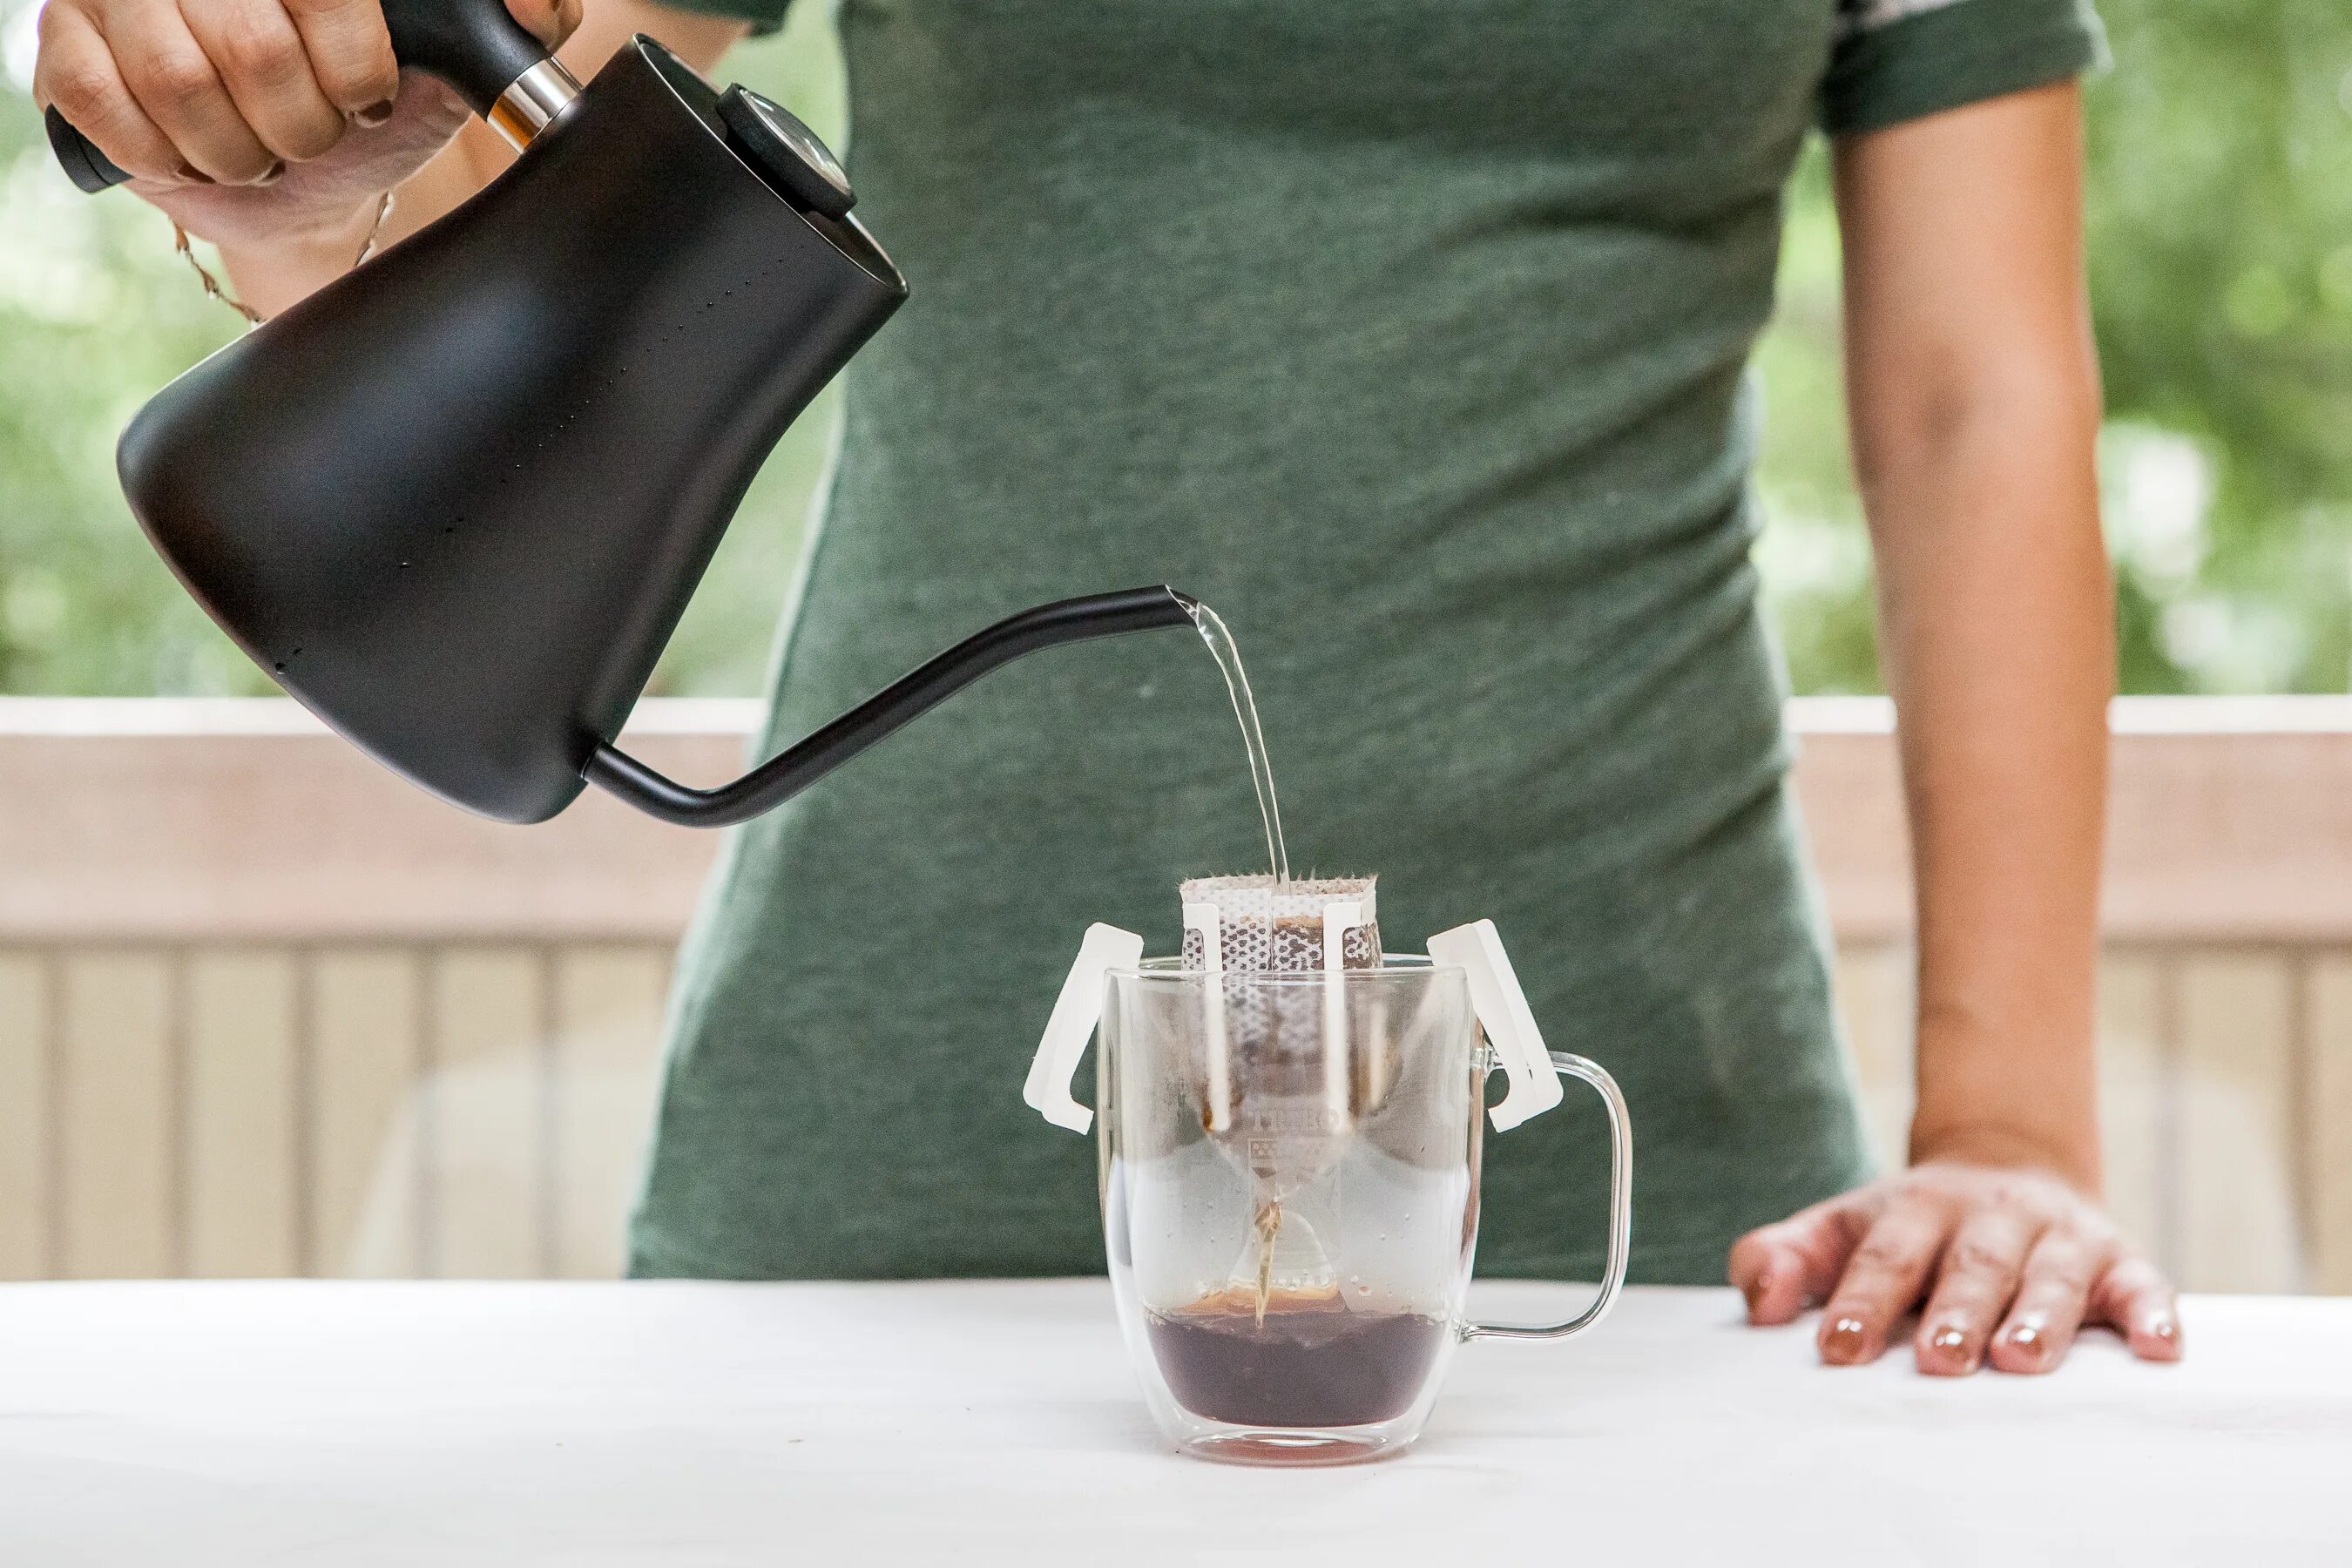 Pour over Coffee. Pour over Coffee Brewing. Бойлер для заваривания кофе как выглядит внутри.